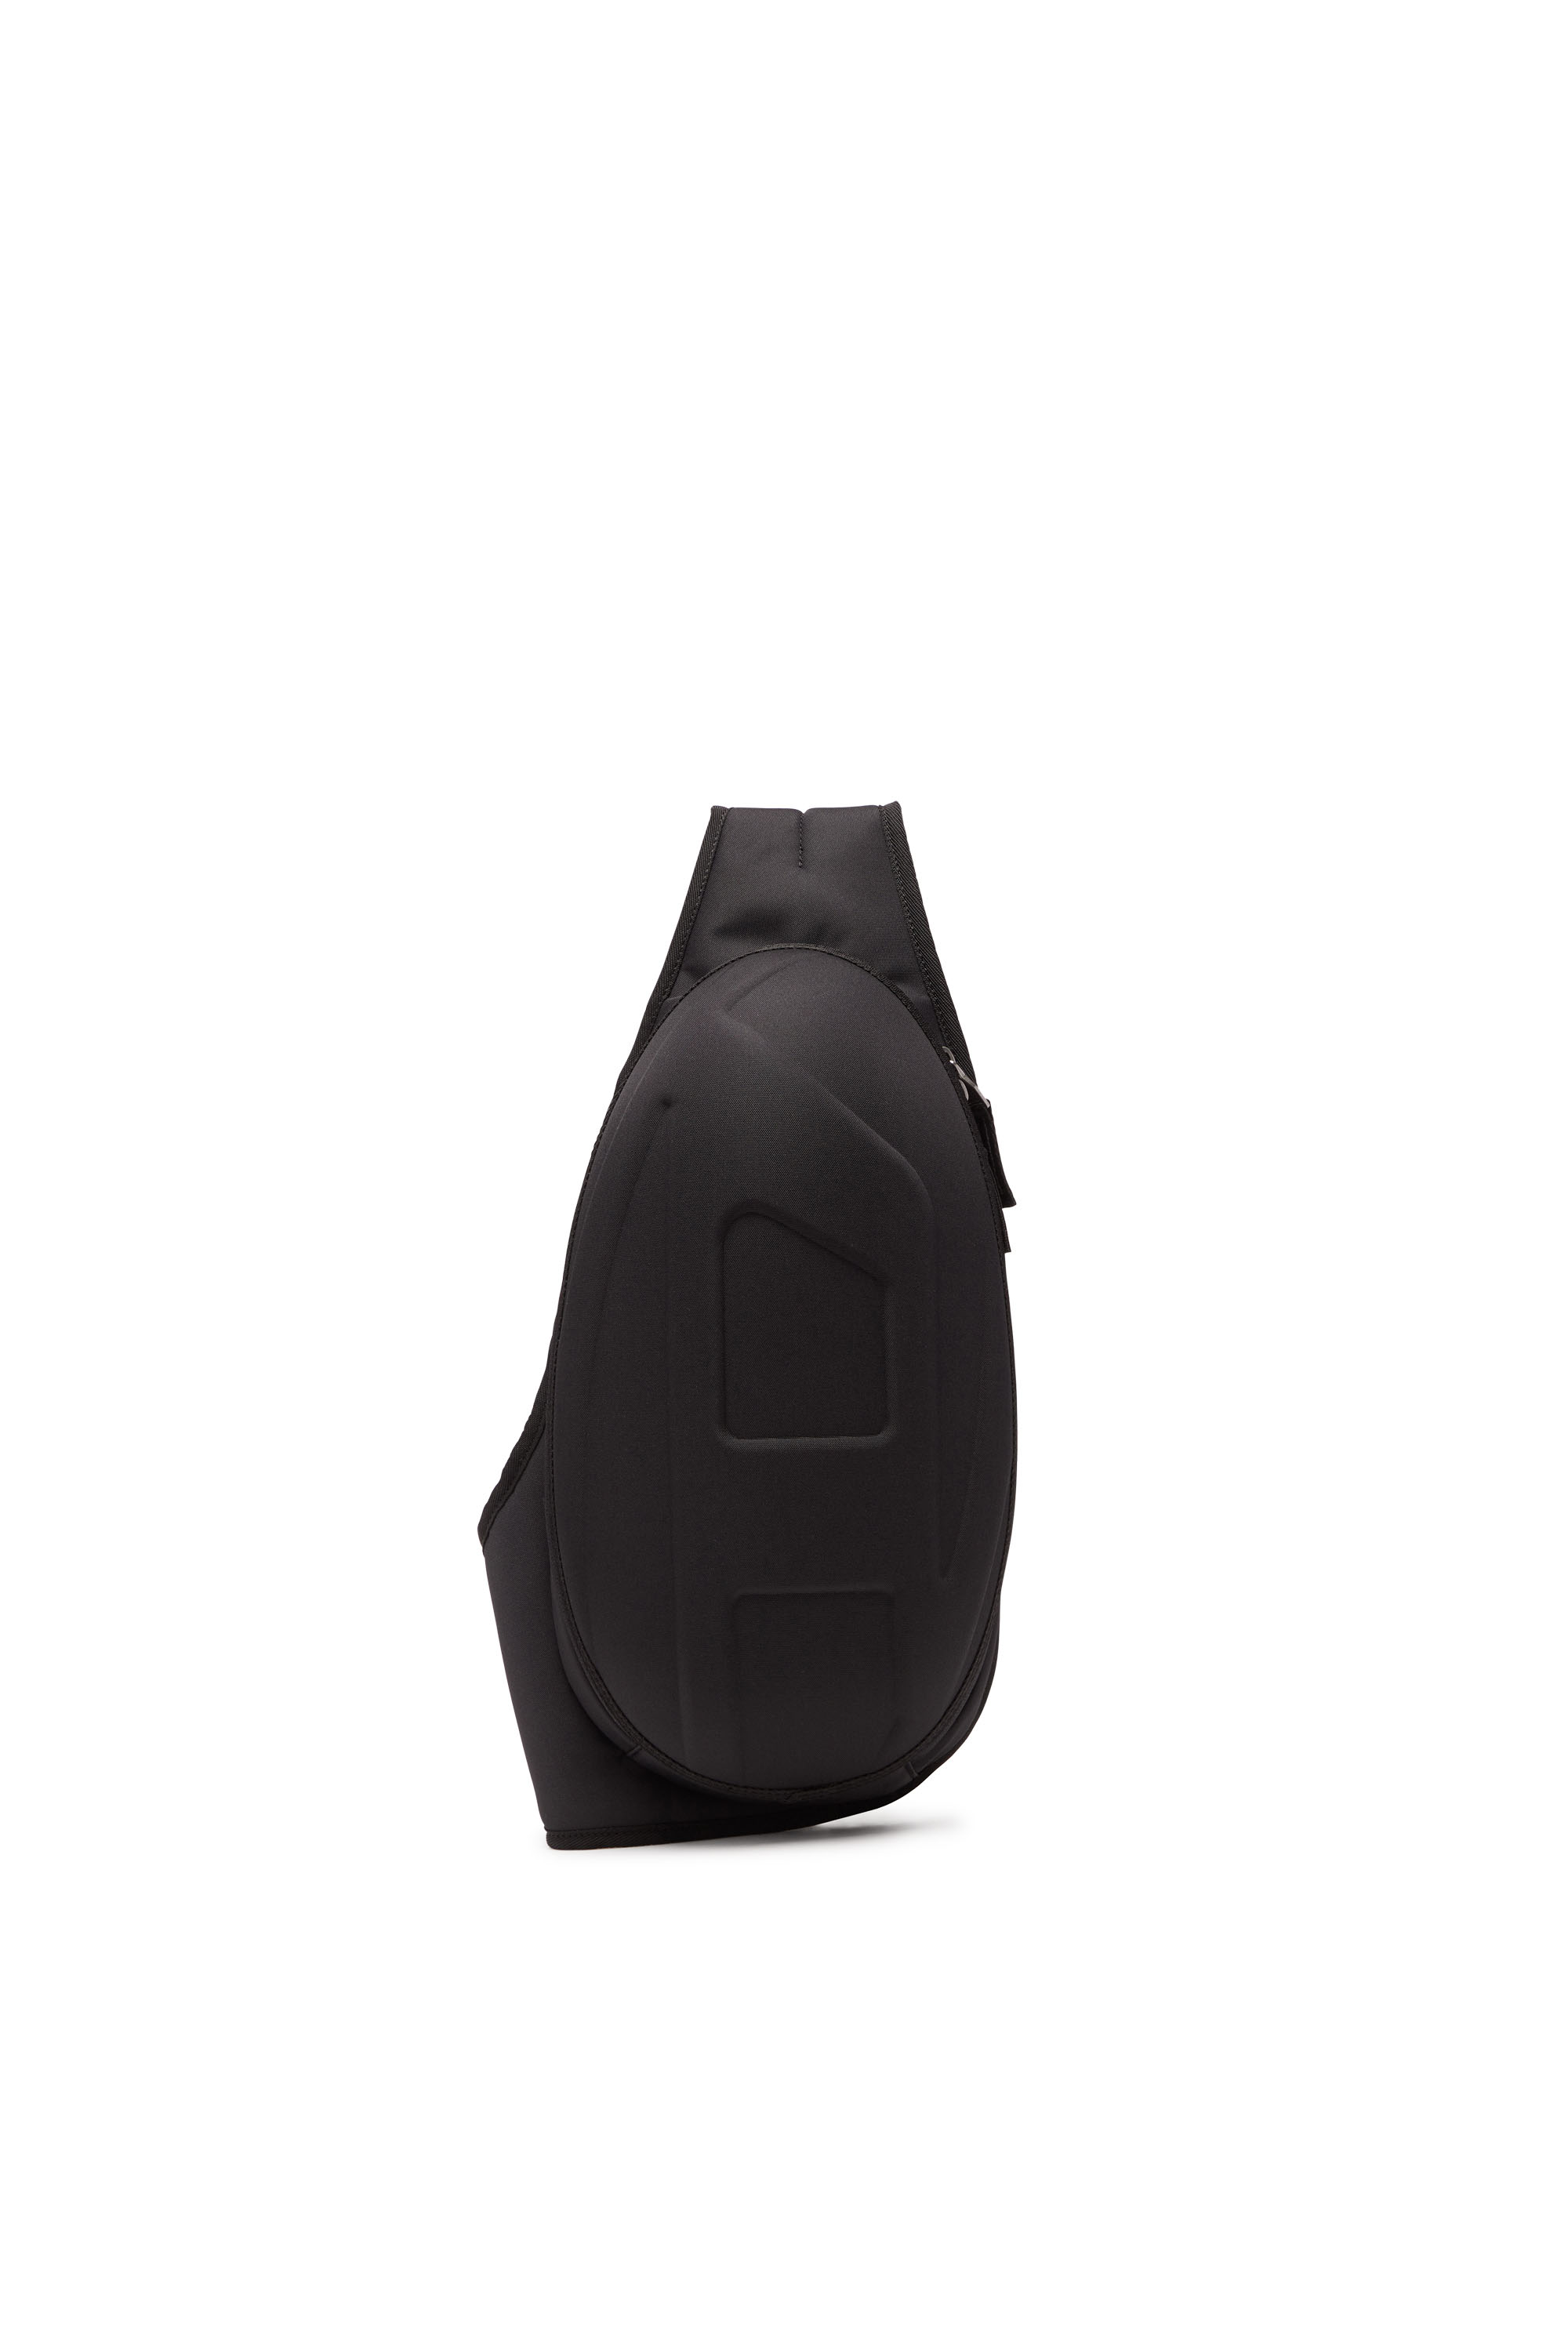 Diesel - 1DR-POD SLING BAG, Man 1DR-Pod Sling Bag - Hard shell sling backpack in Black - Image 1